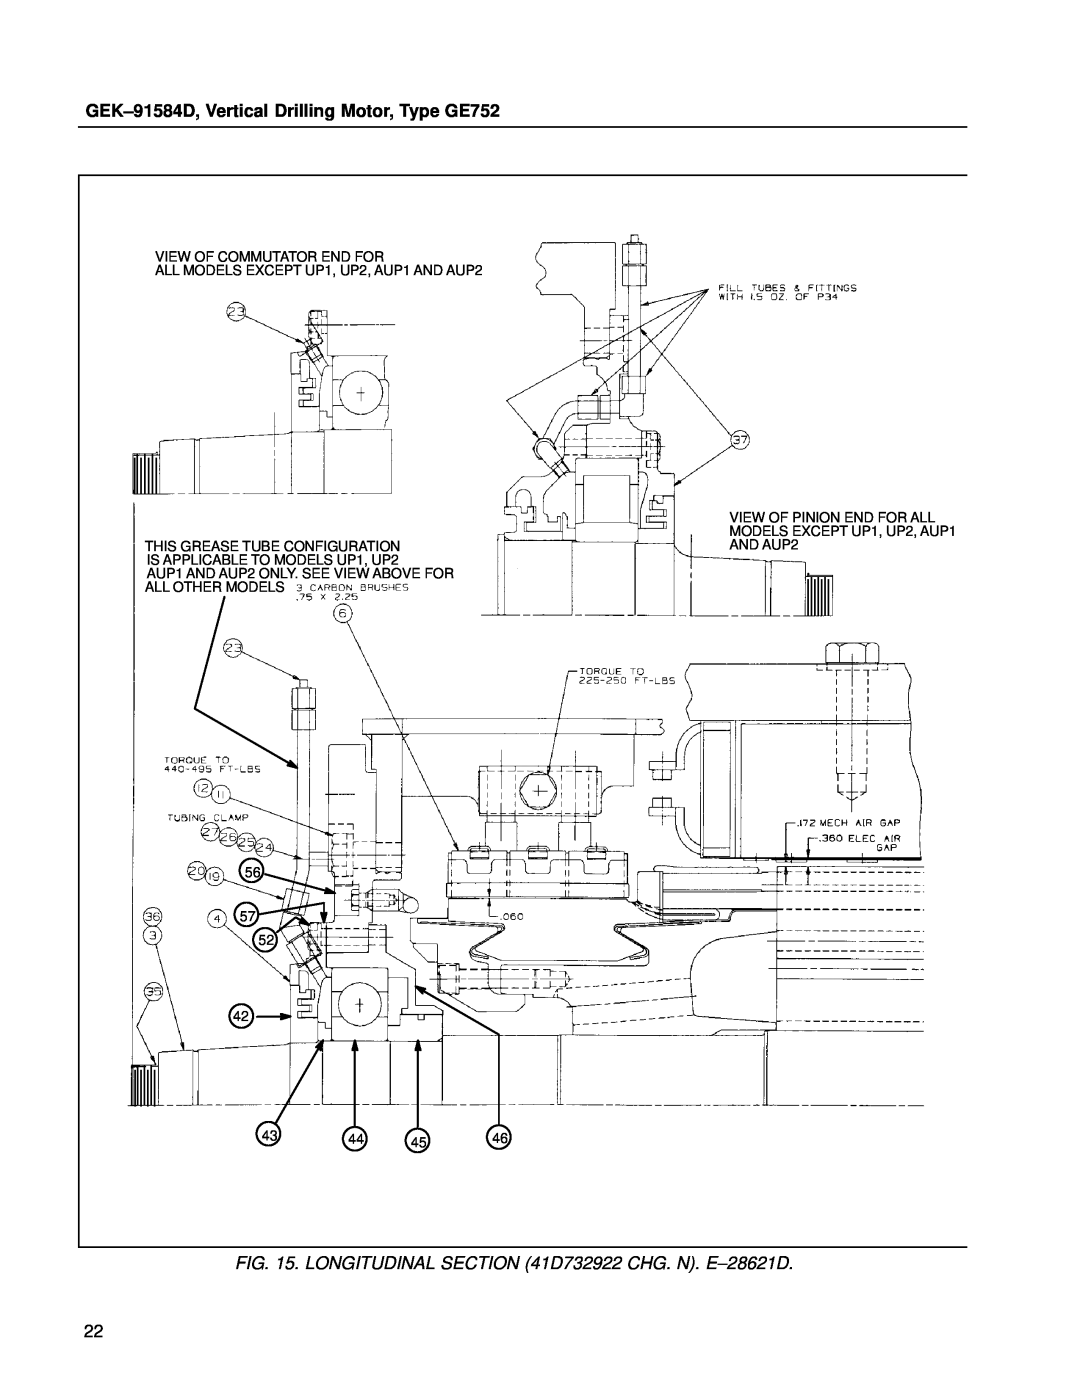 GE manual LONGITUDINAL D732922 CHG. N. E±28621D, GEK±91584D, Vertical Drilling Motor, Type GE752 